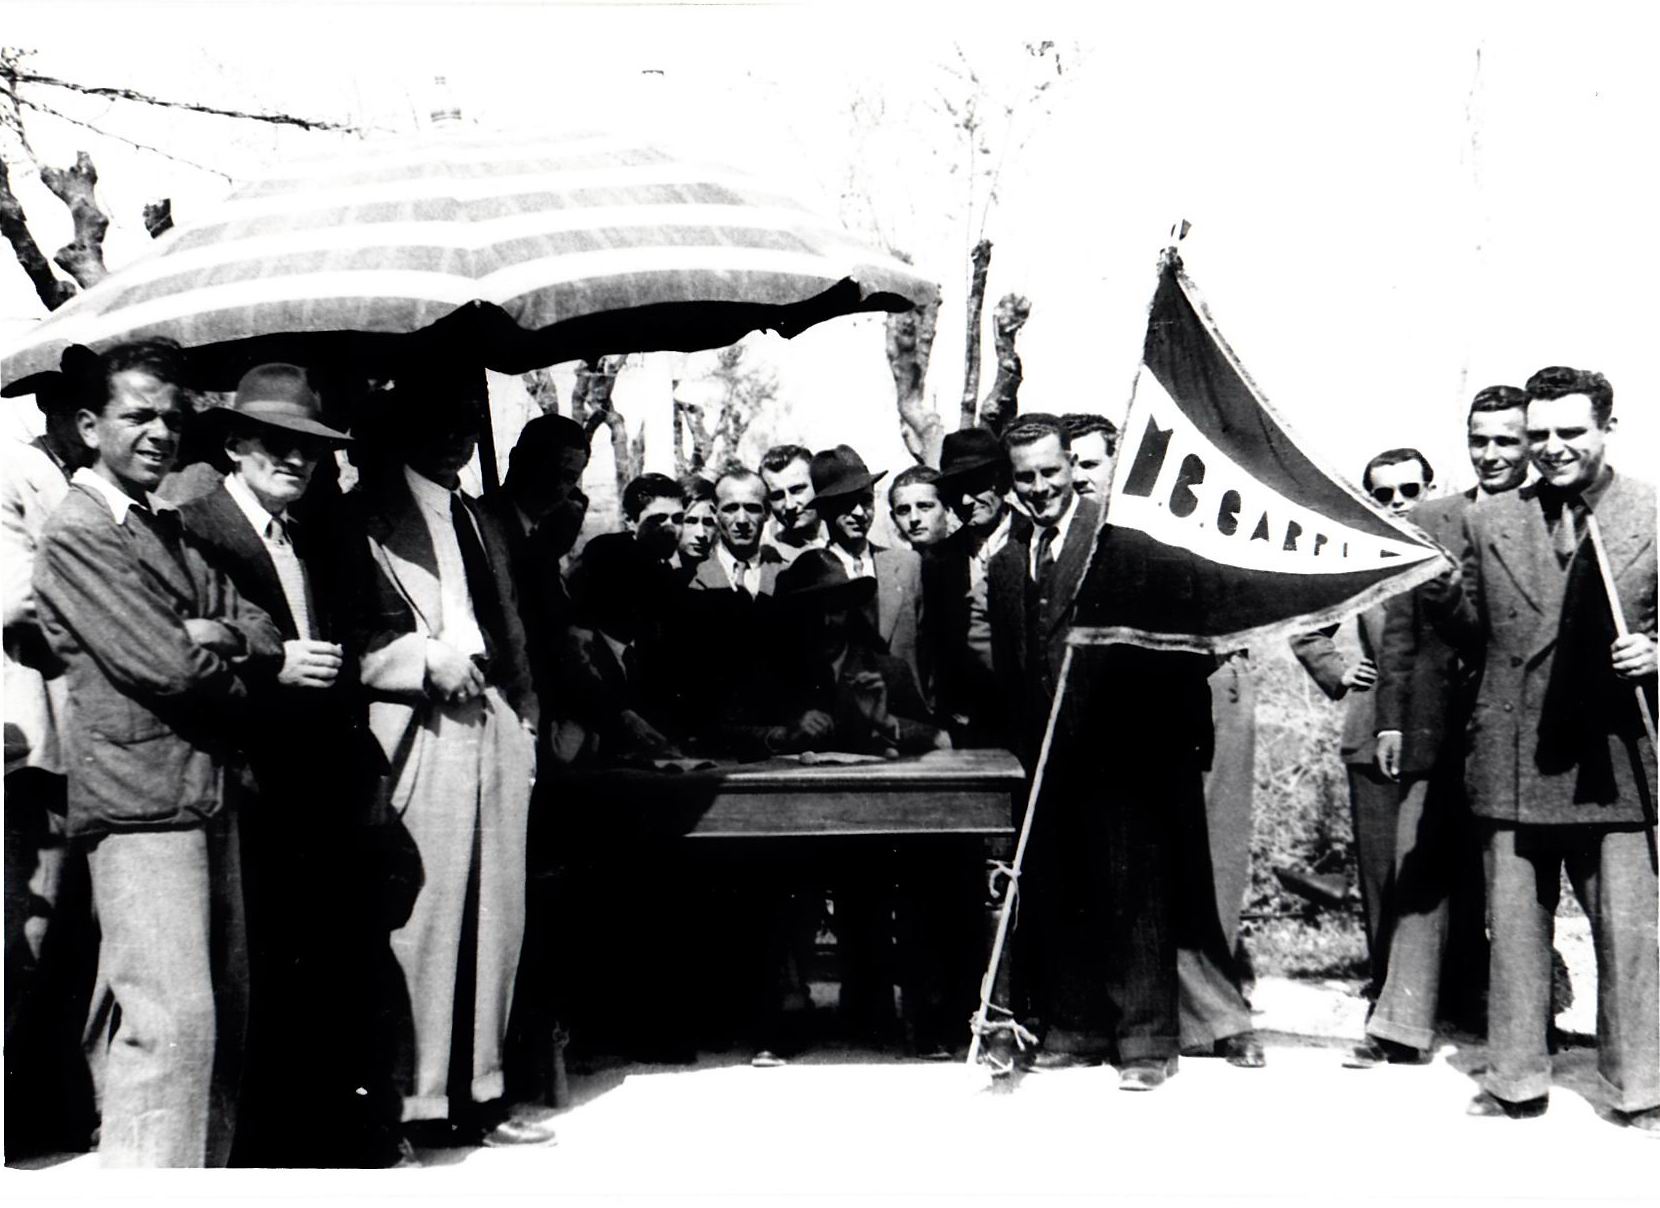 1947-ca-Manifestazione-MotoClub-Carpi